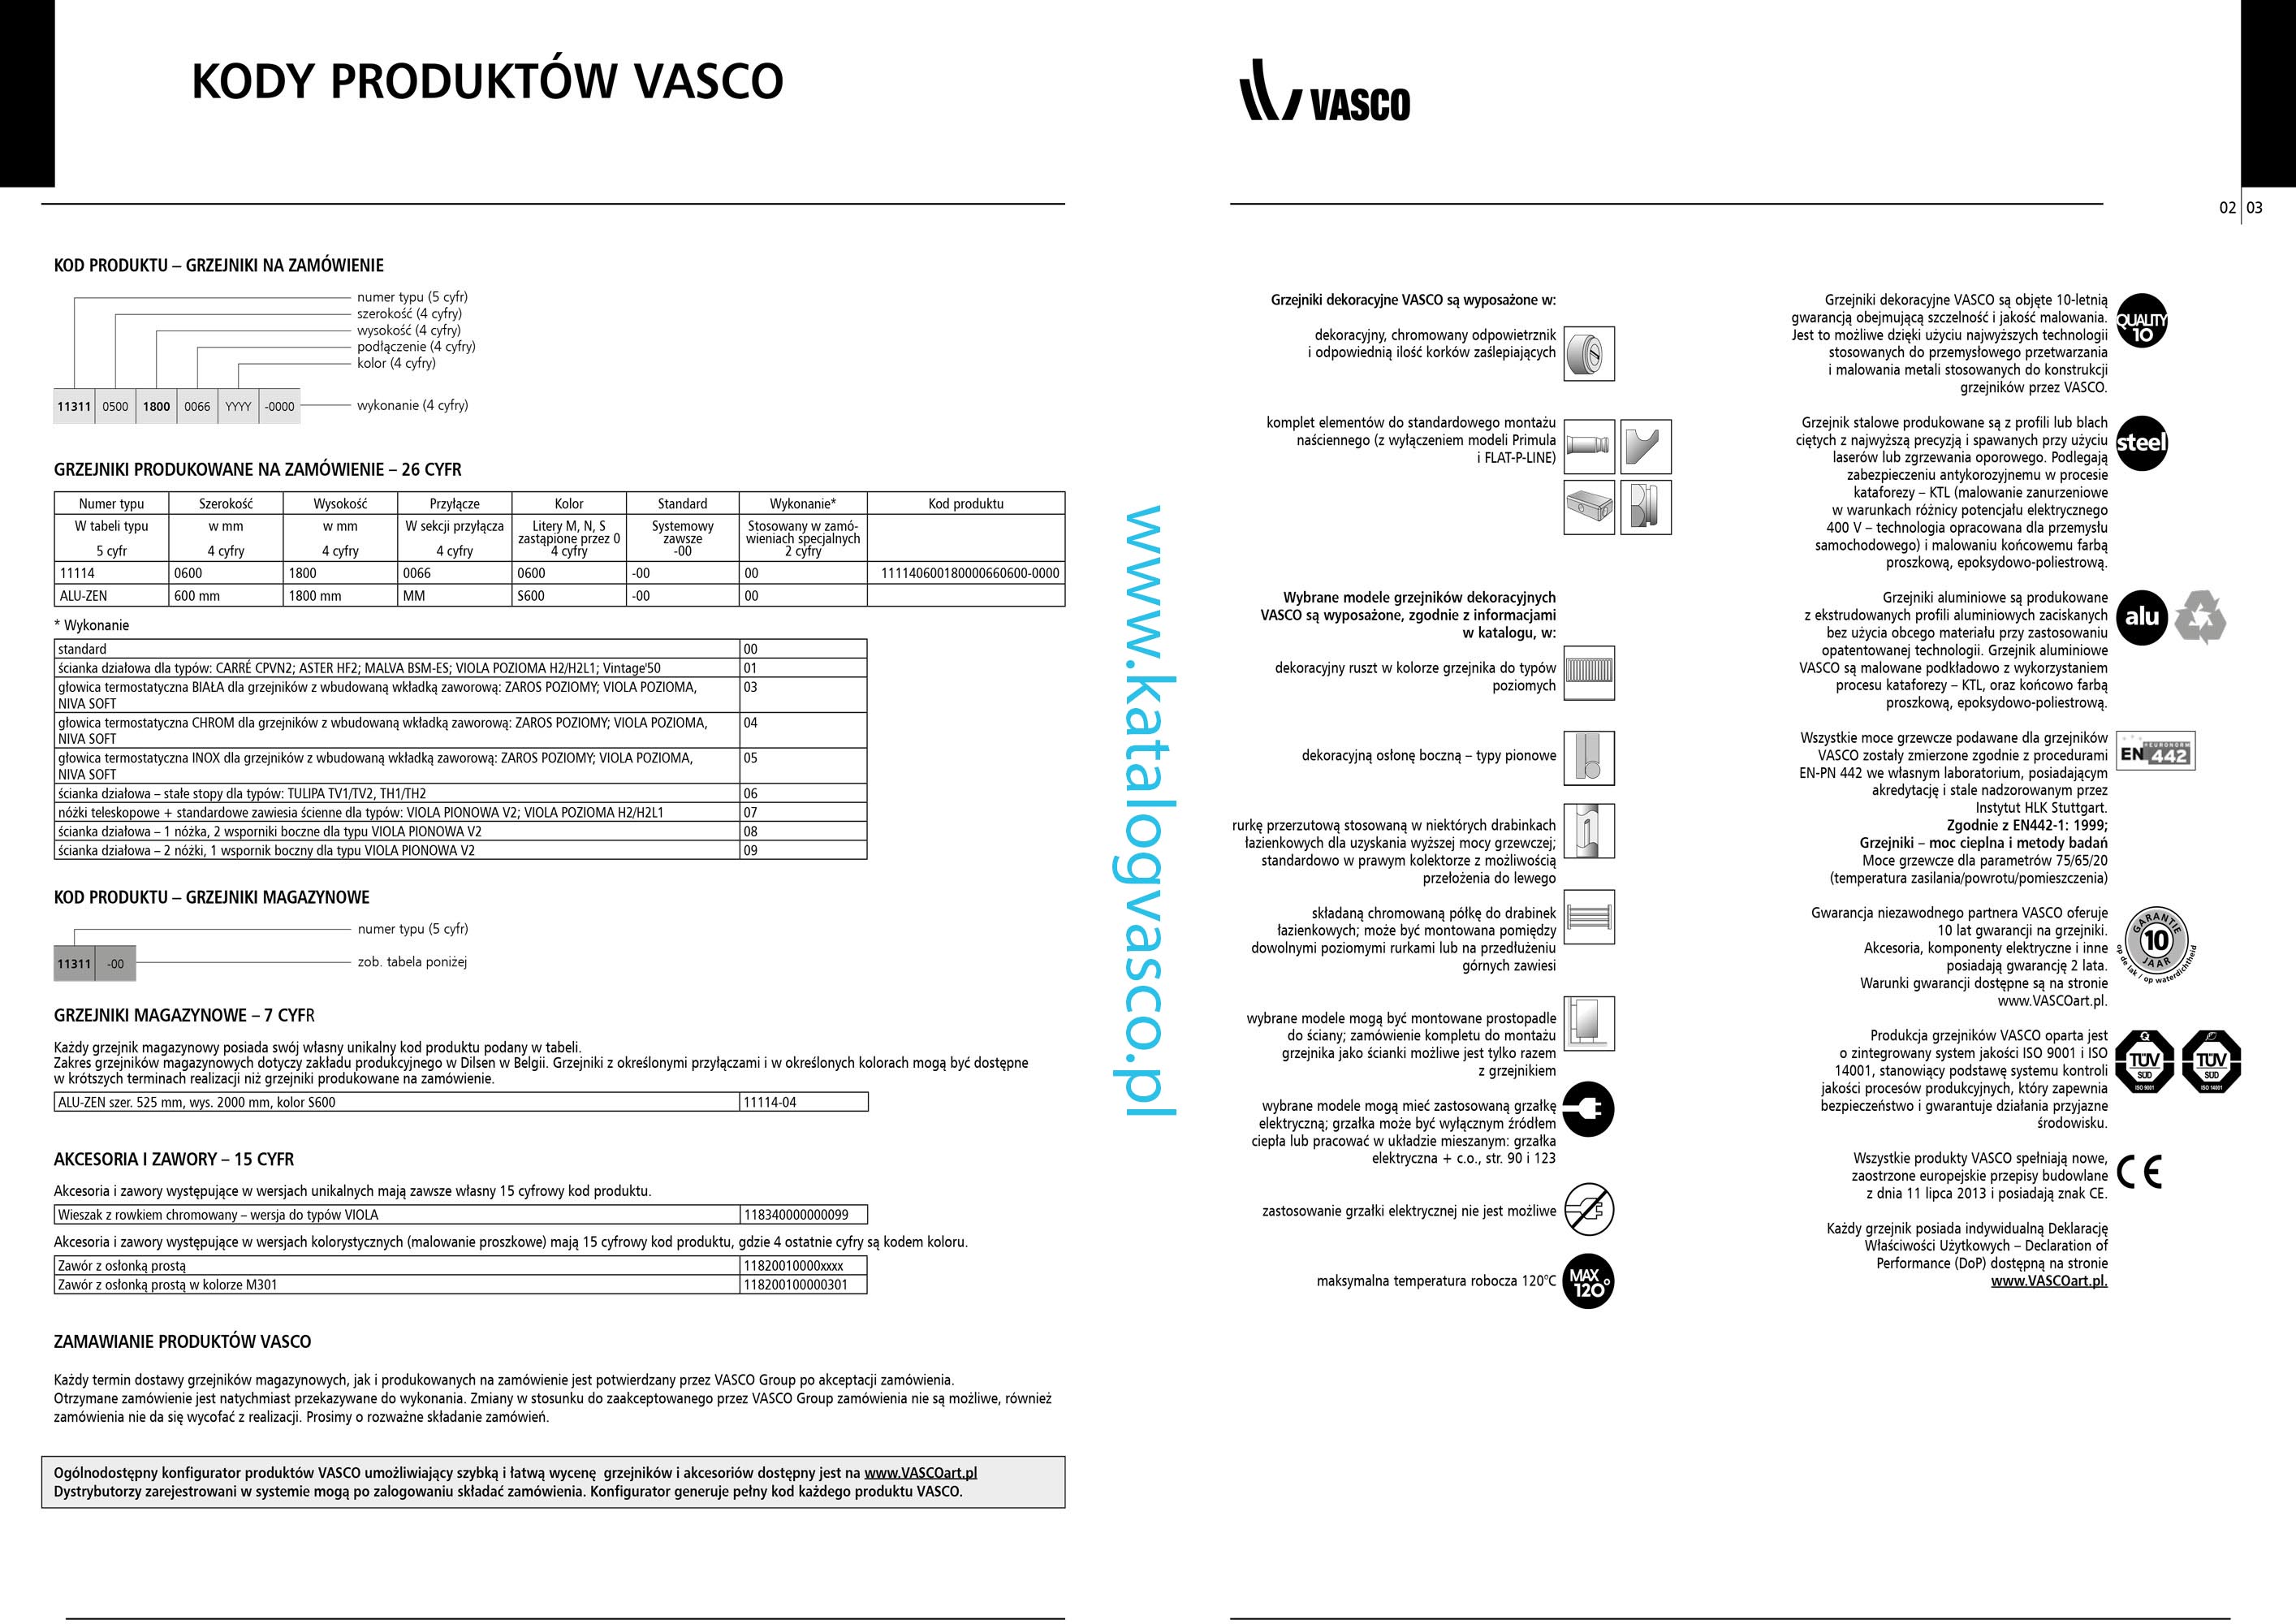 Katalog Vasco 2017 - informacje